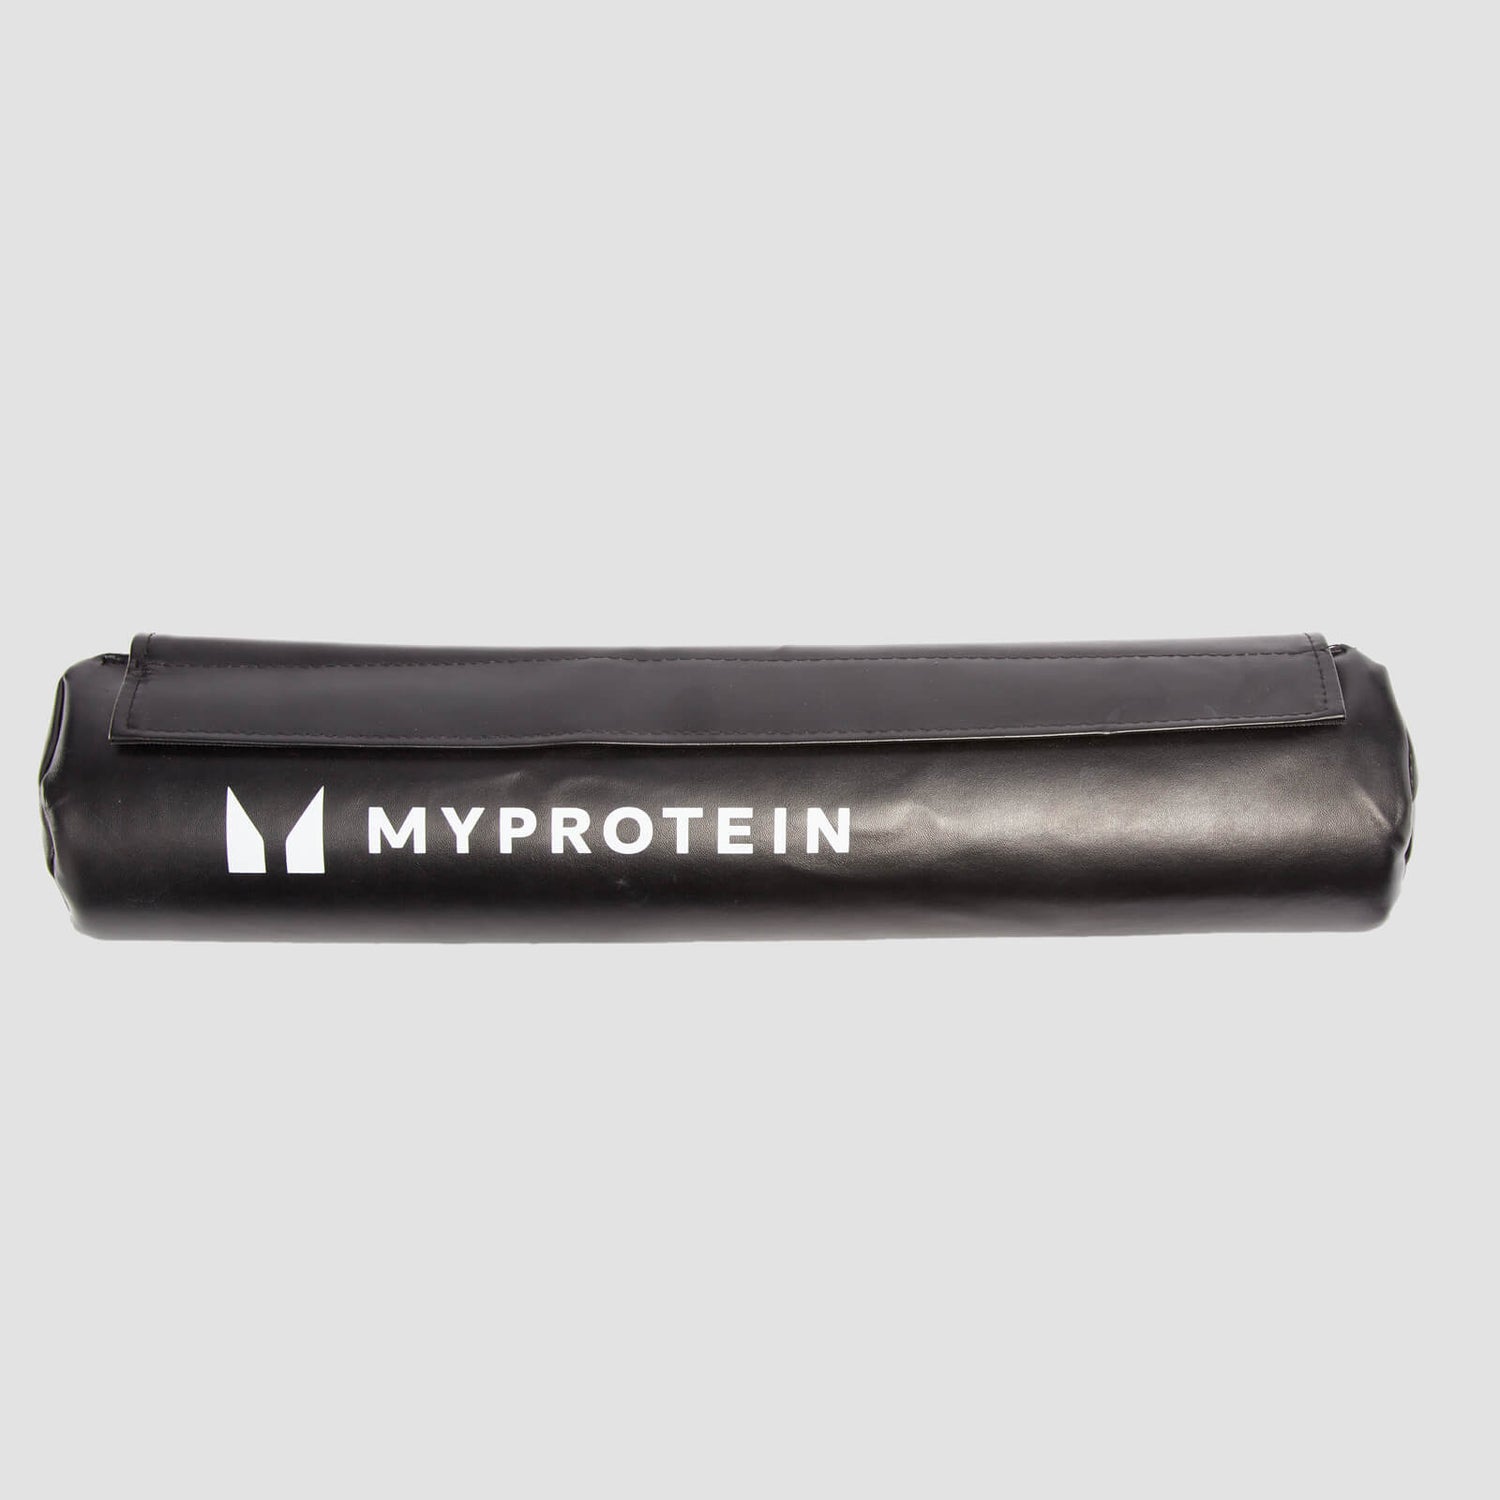 Myprotein杠铃垫 - 黑色